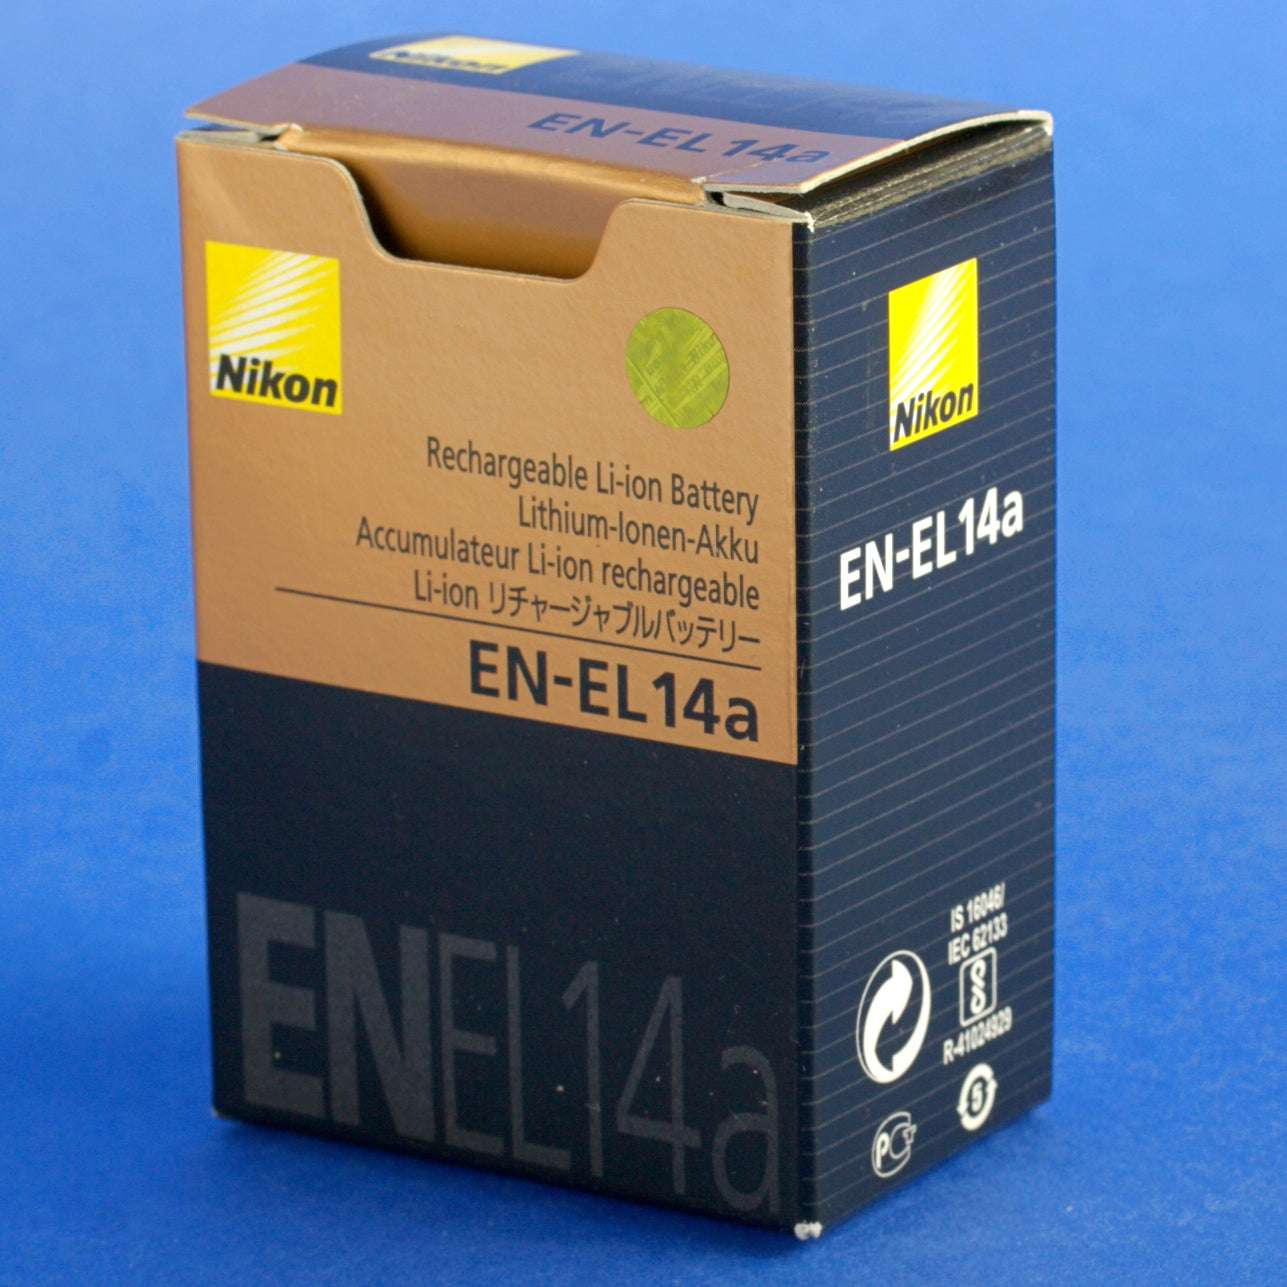 Genuine Nikon EN-EL14a Battery Mint Condition